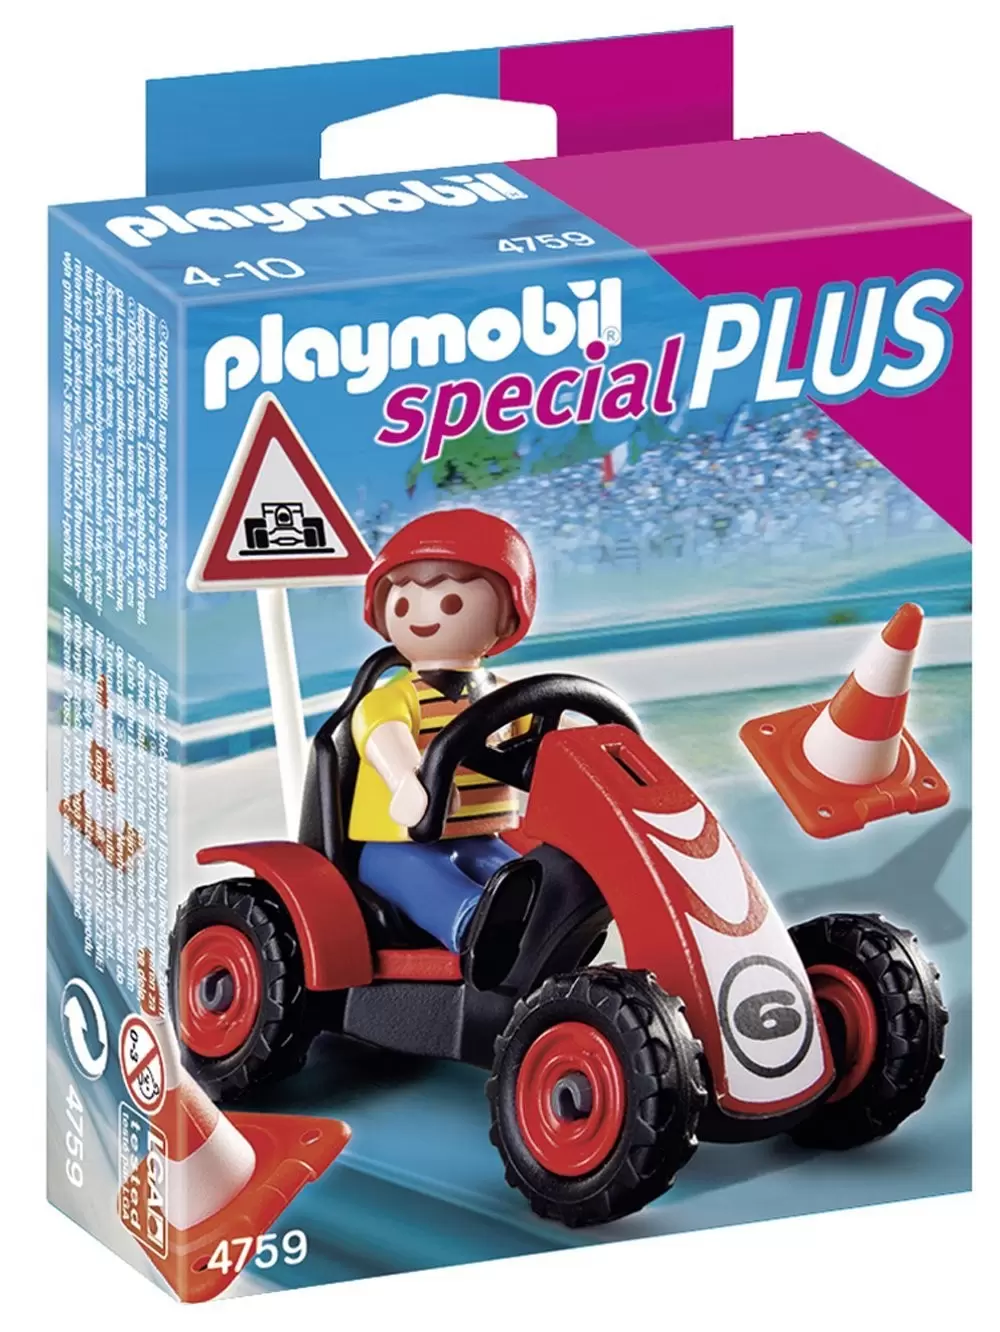 Playmobil SpecialPlus - Kid with Kart